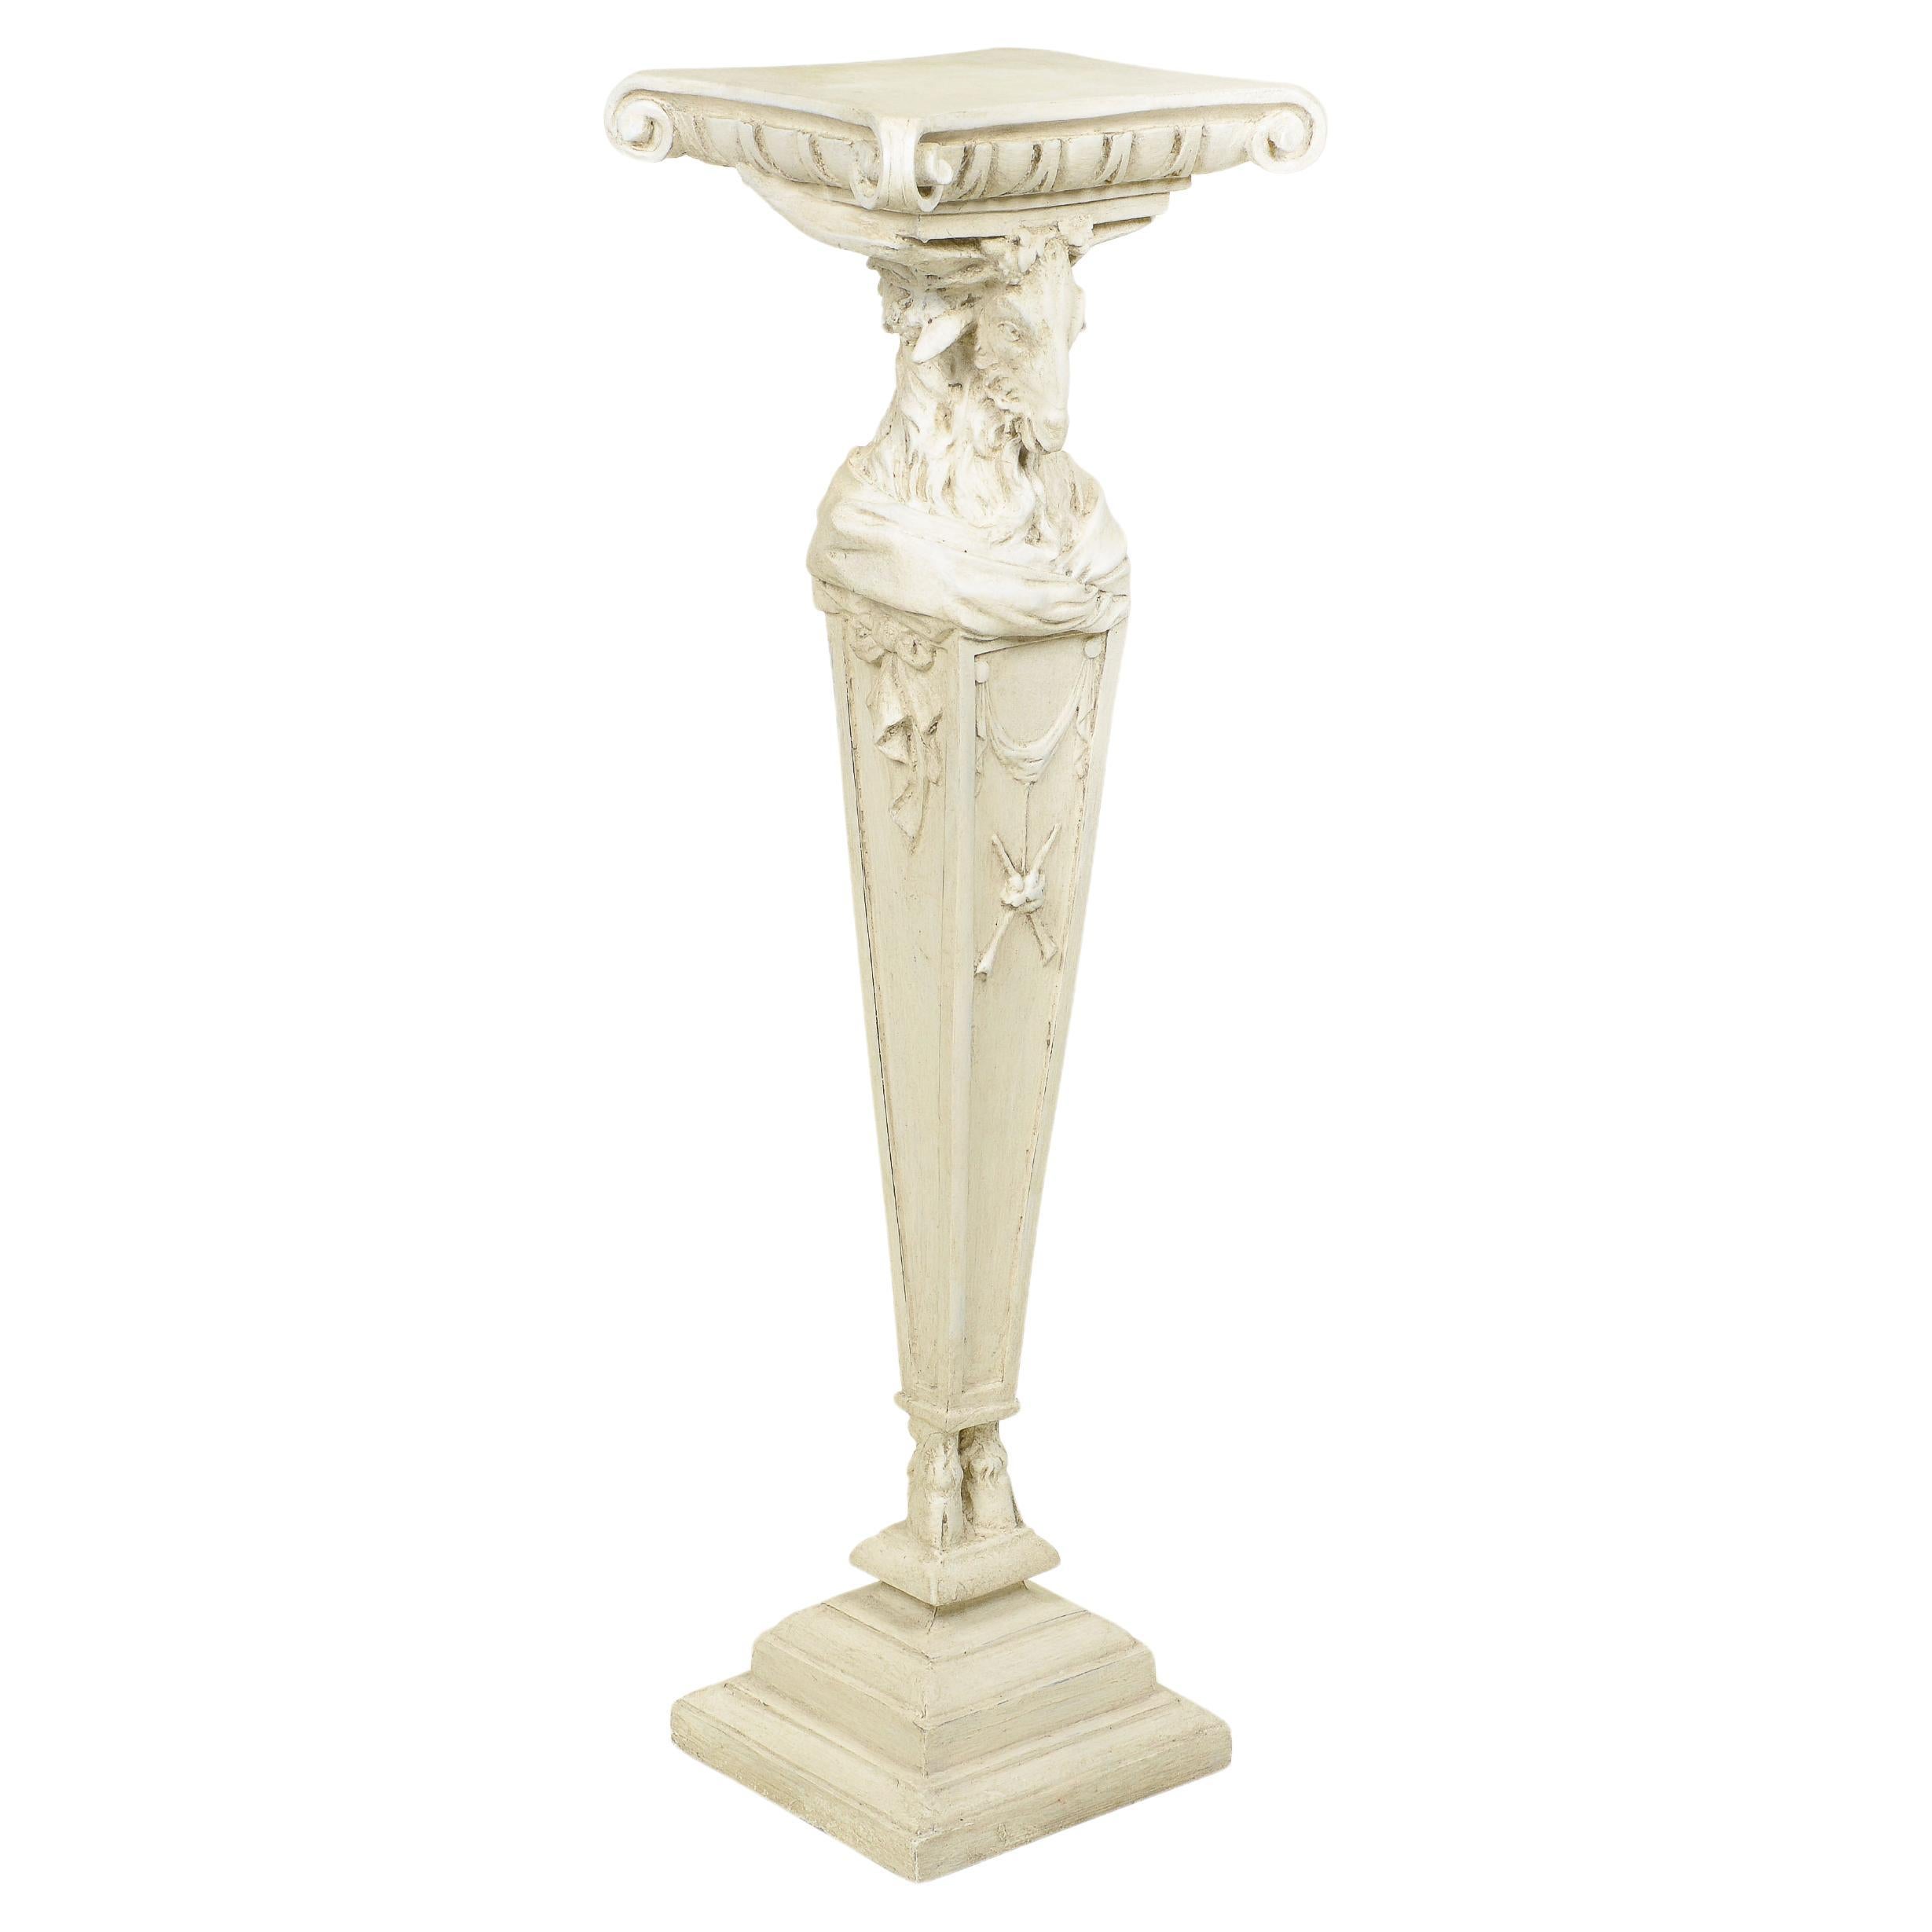 The Pedestal im neoklassischen Stil, weiß bemalt und geschnitzt